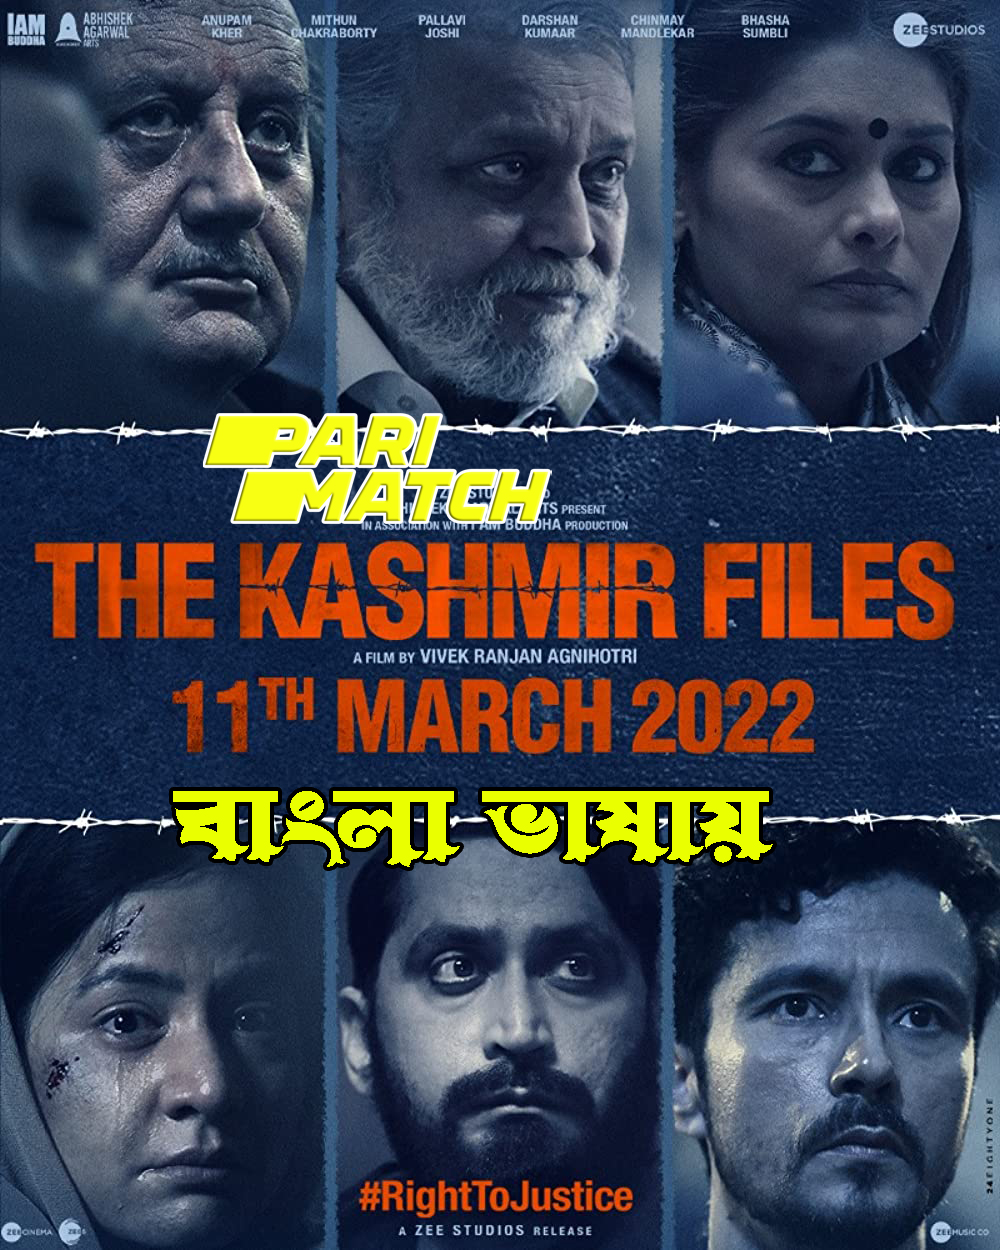 The Kashmir Files (2022) Bengali Dubbed (VO) [PariMatch] 720p WEBRip Download